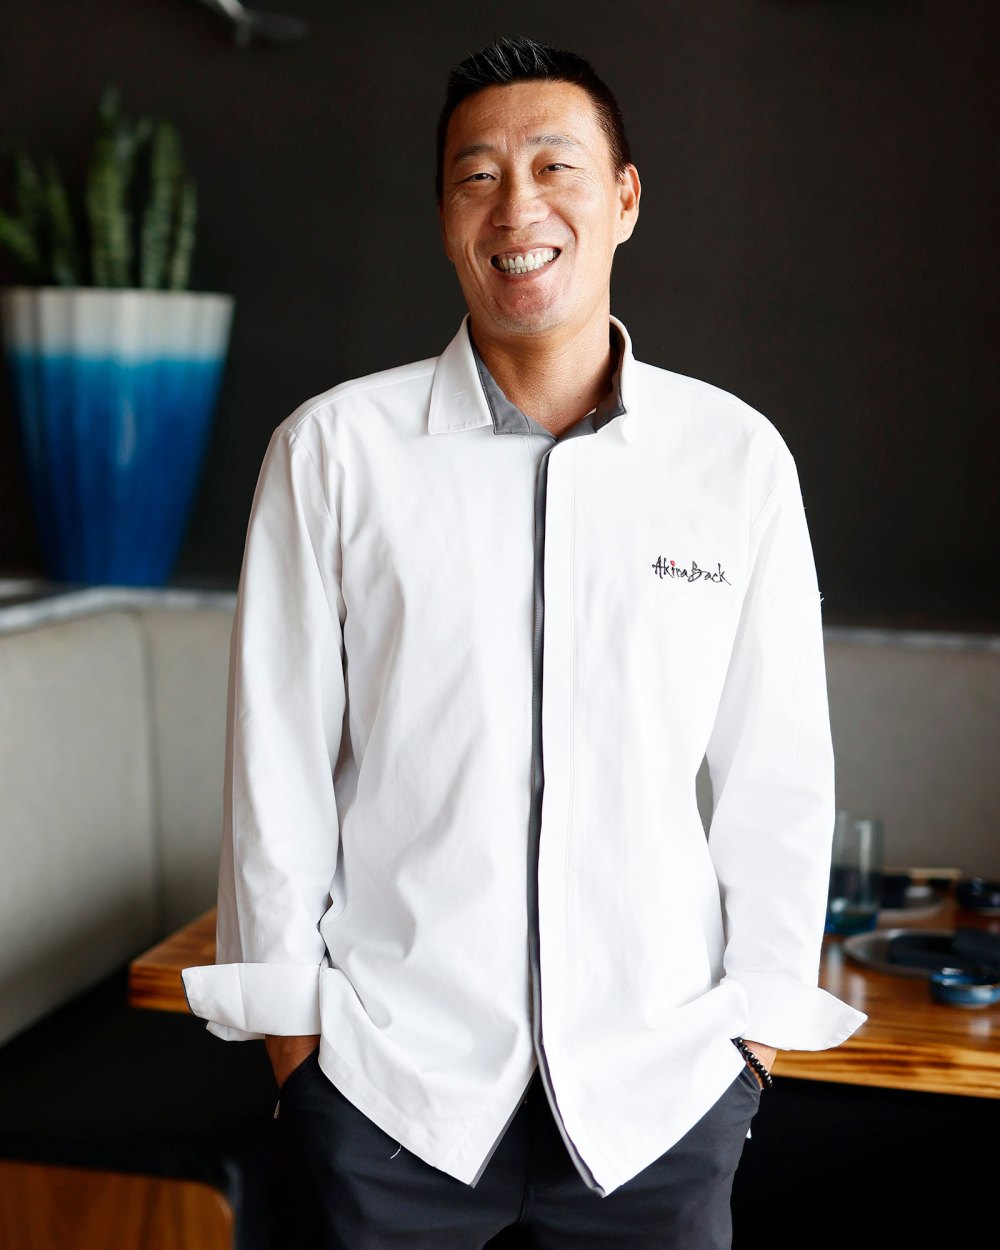 Celebrity Chef Akira Back Plans Opening 8 More Namesake Restaurants